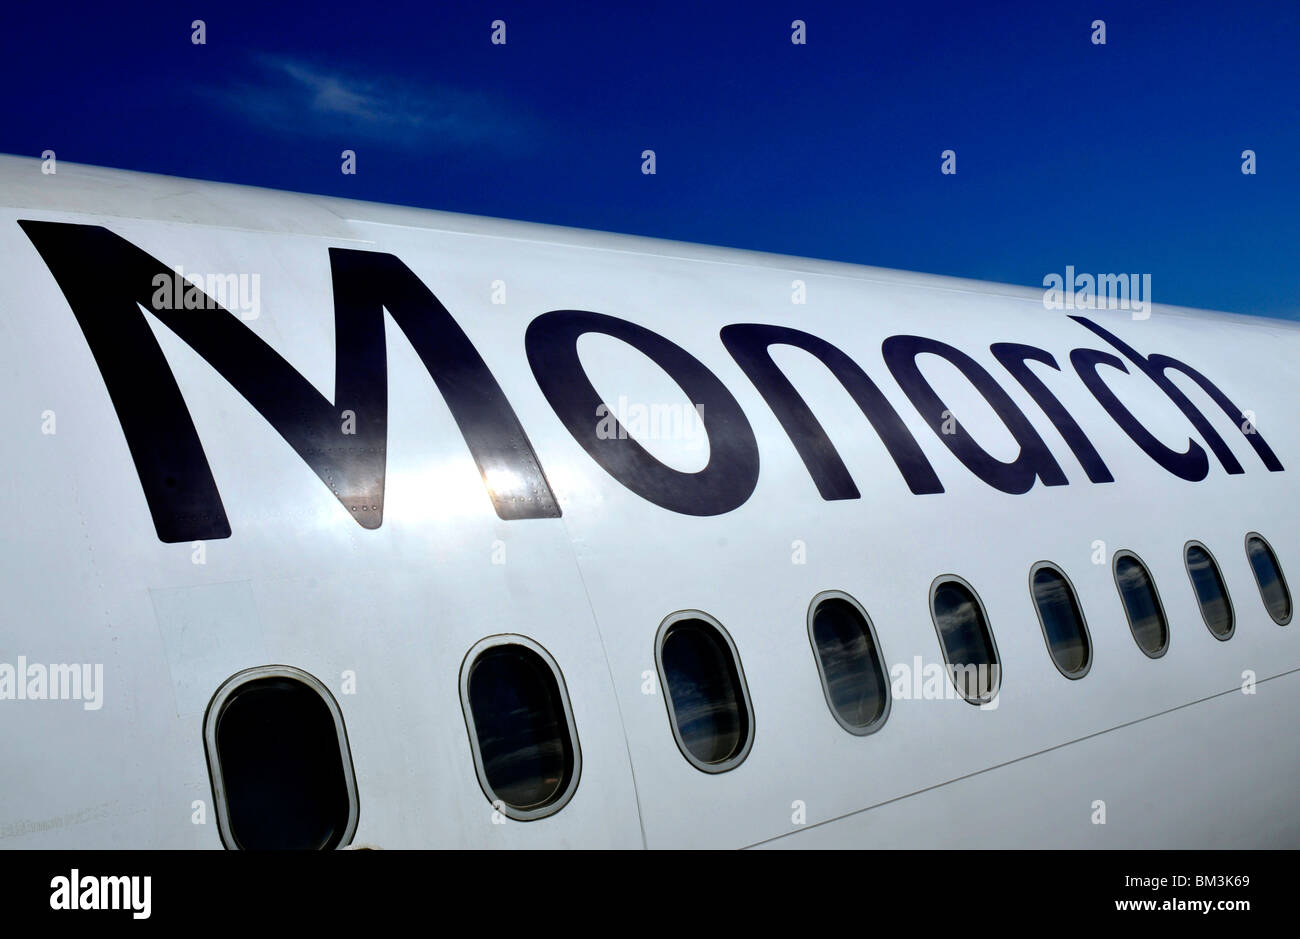 La Monarch Airlines, Monarch aeromobili, Monarch Airlines logo Foto Stock